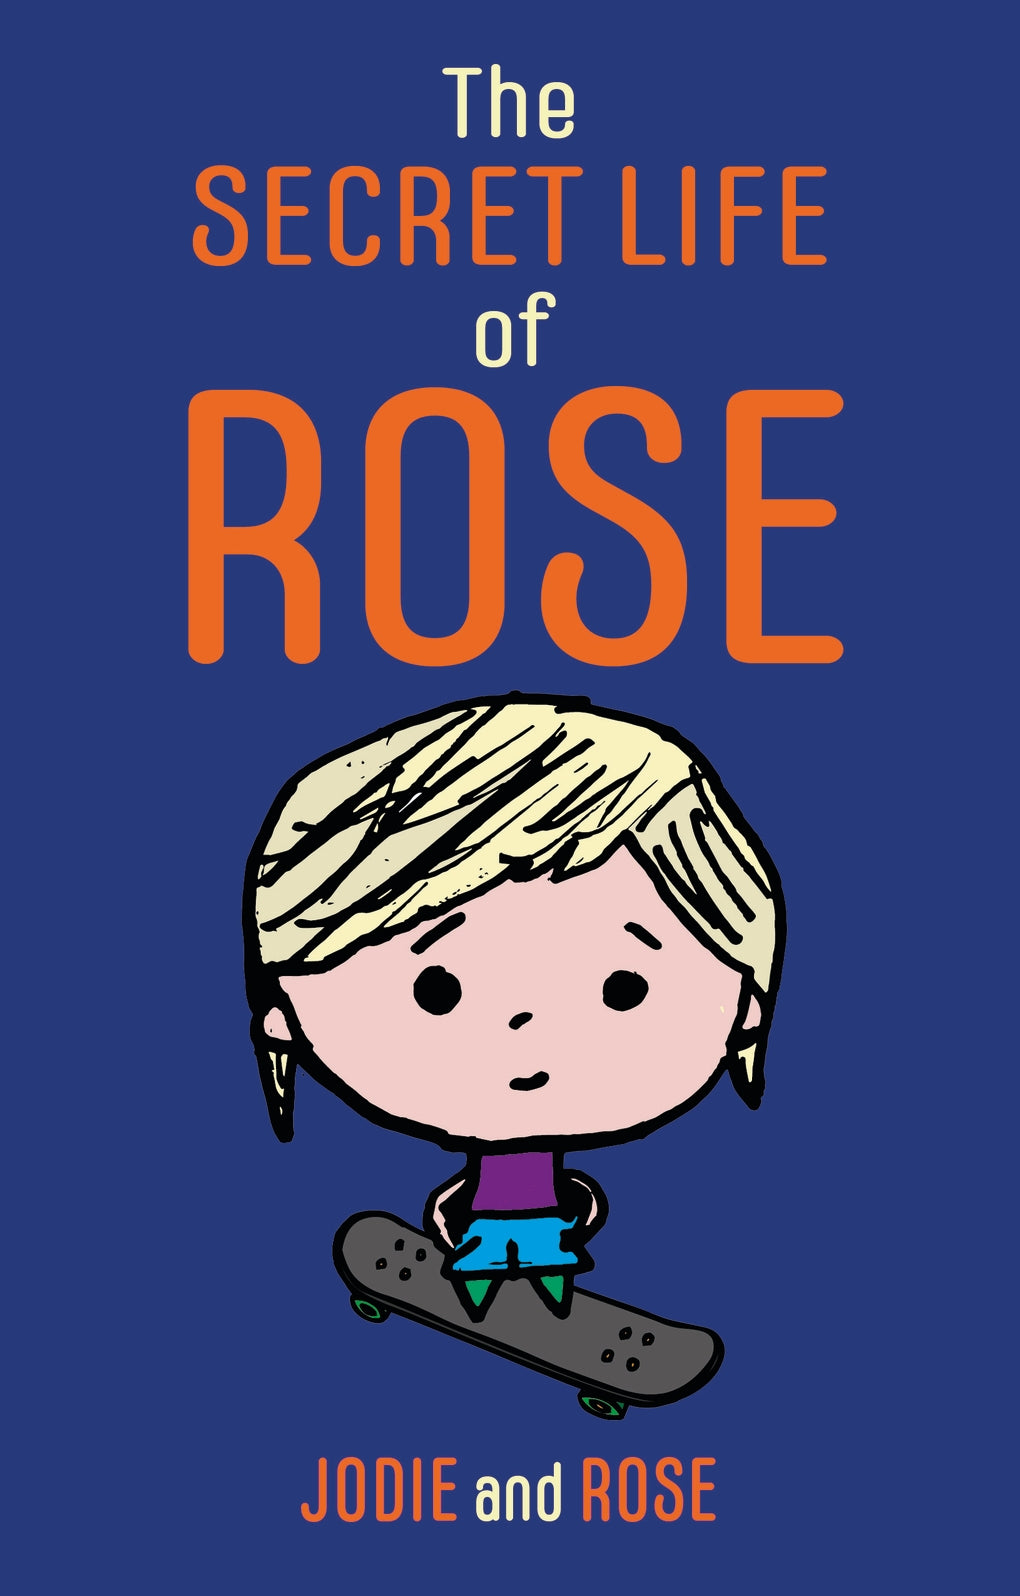 The Secret Life of Rose by Jodie Clarke, Rose Smitten, Luke Beardon